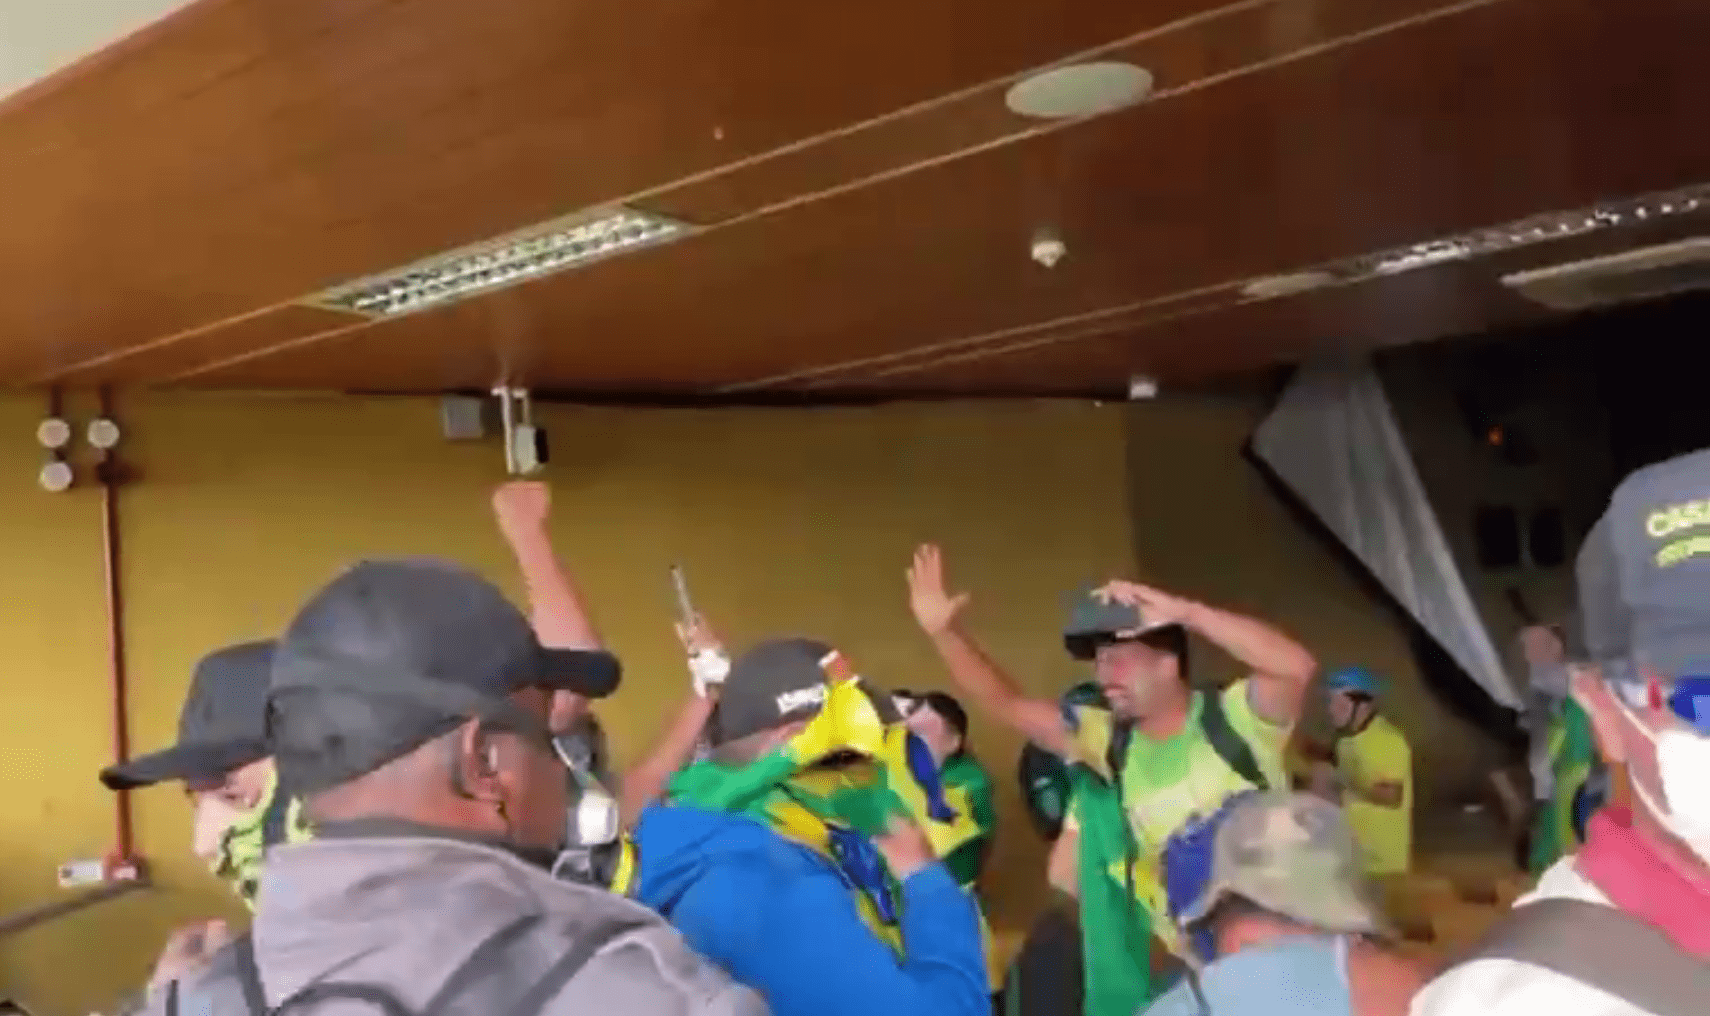 Режим чрезвычайной ситуации объявили в столице Бразилии из-за массовых беспорядков